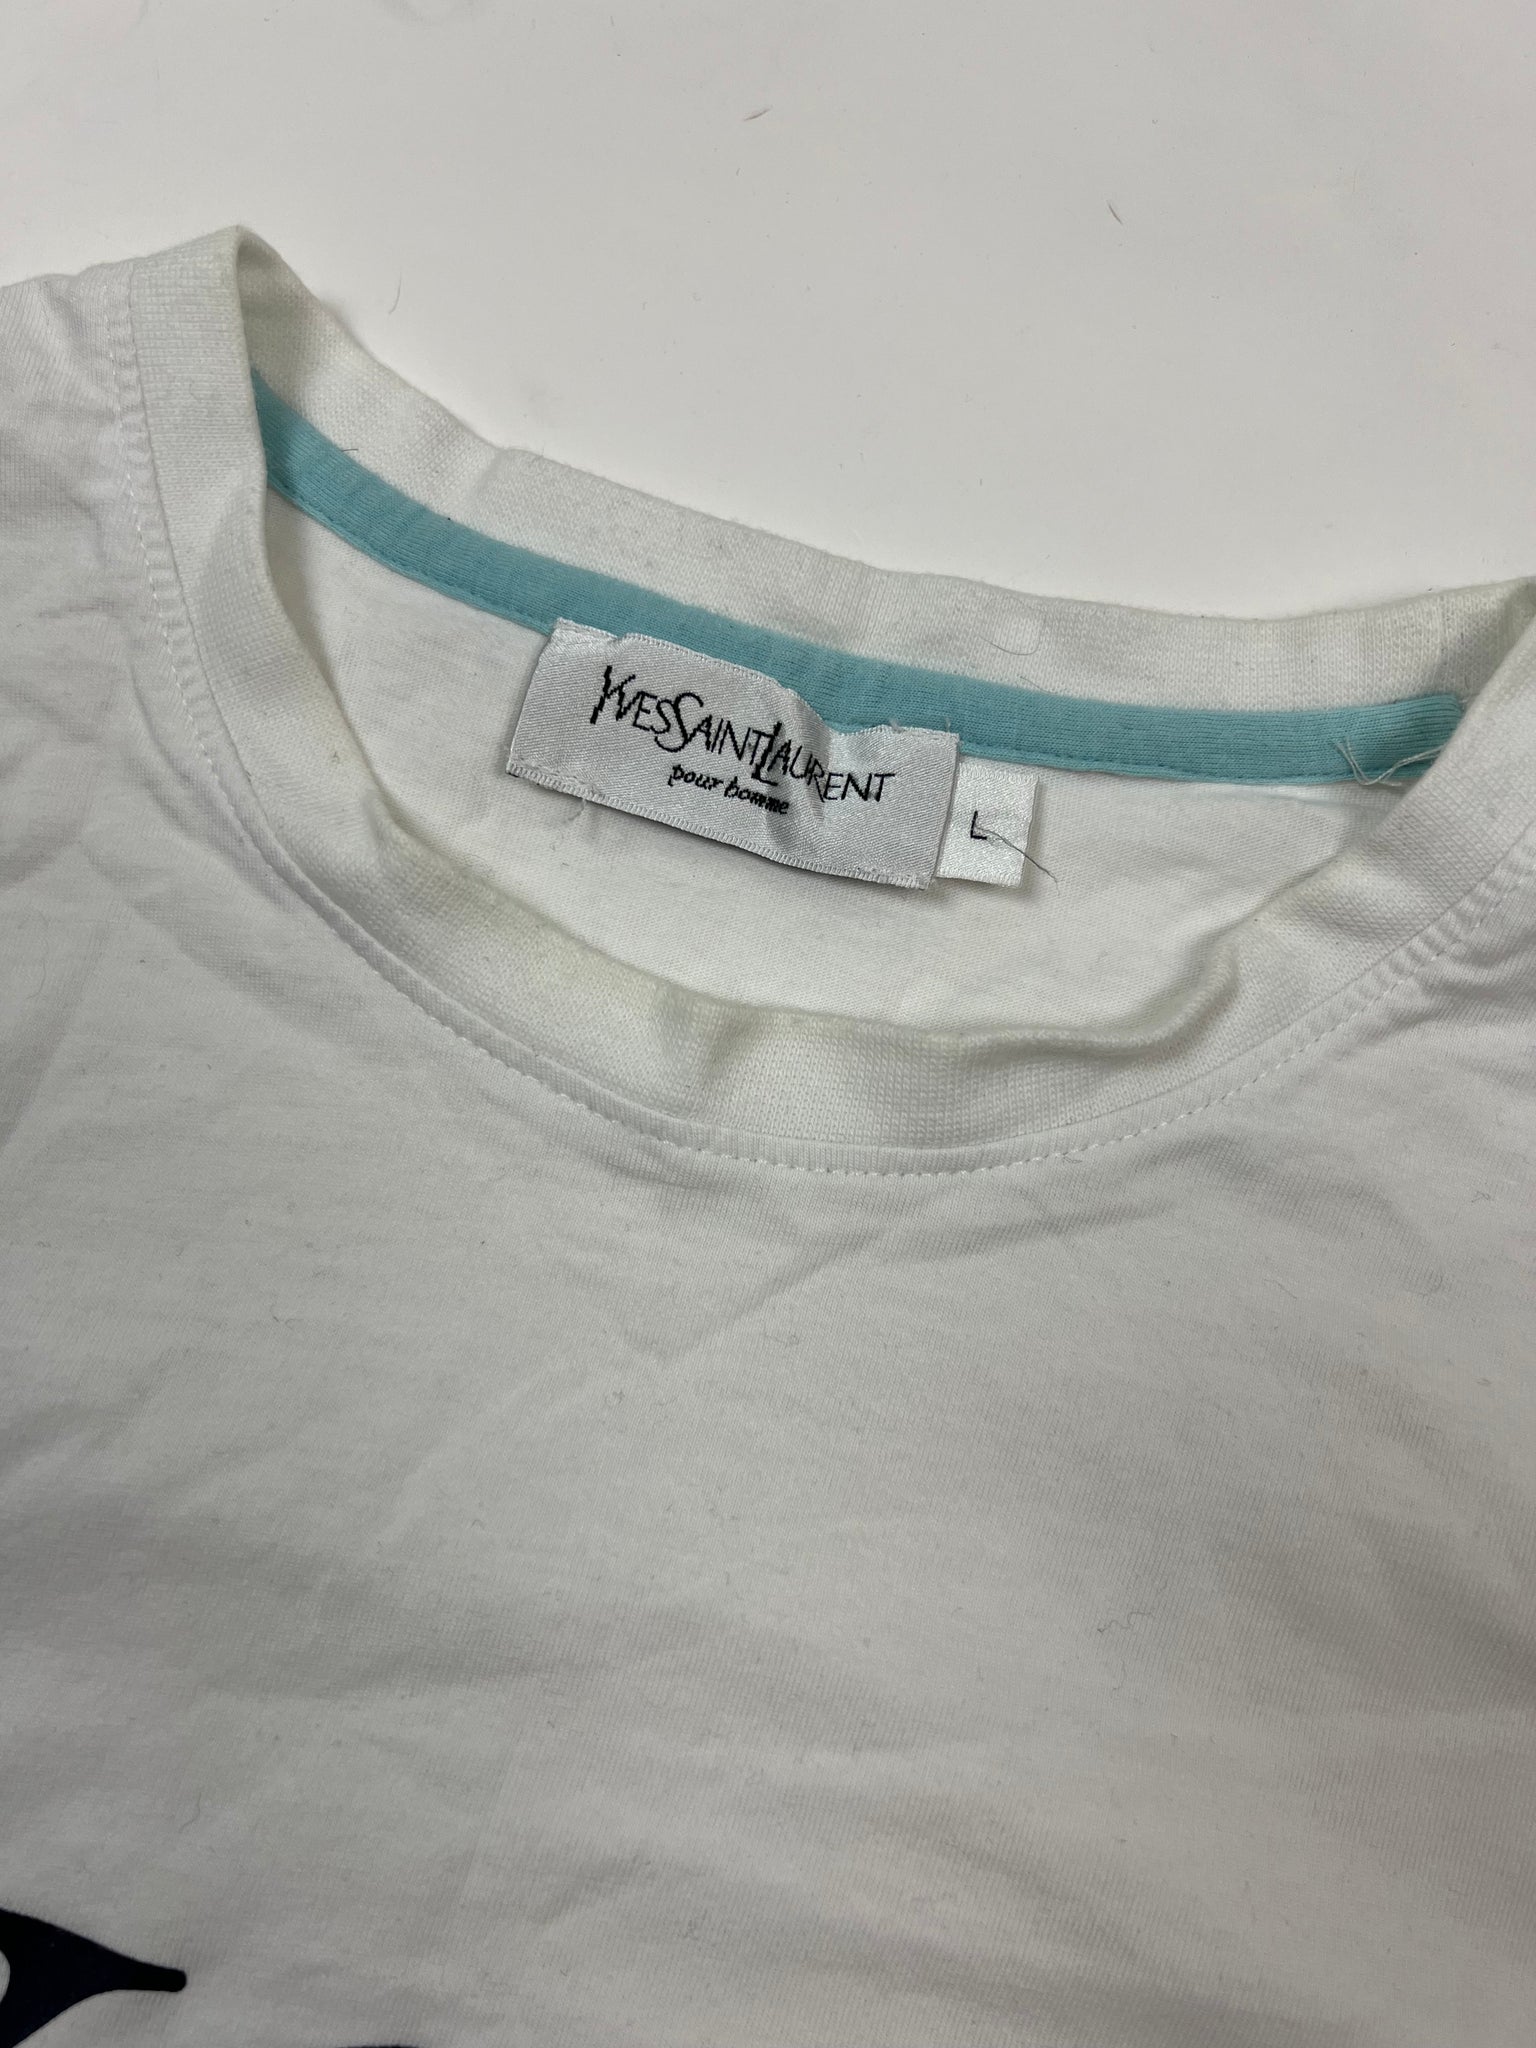 Yves Saint Laurent T-Shirt (L)